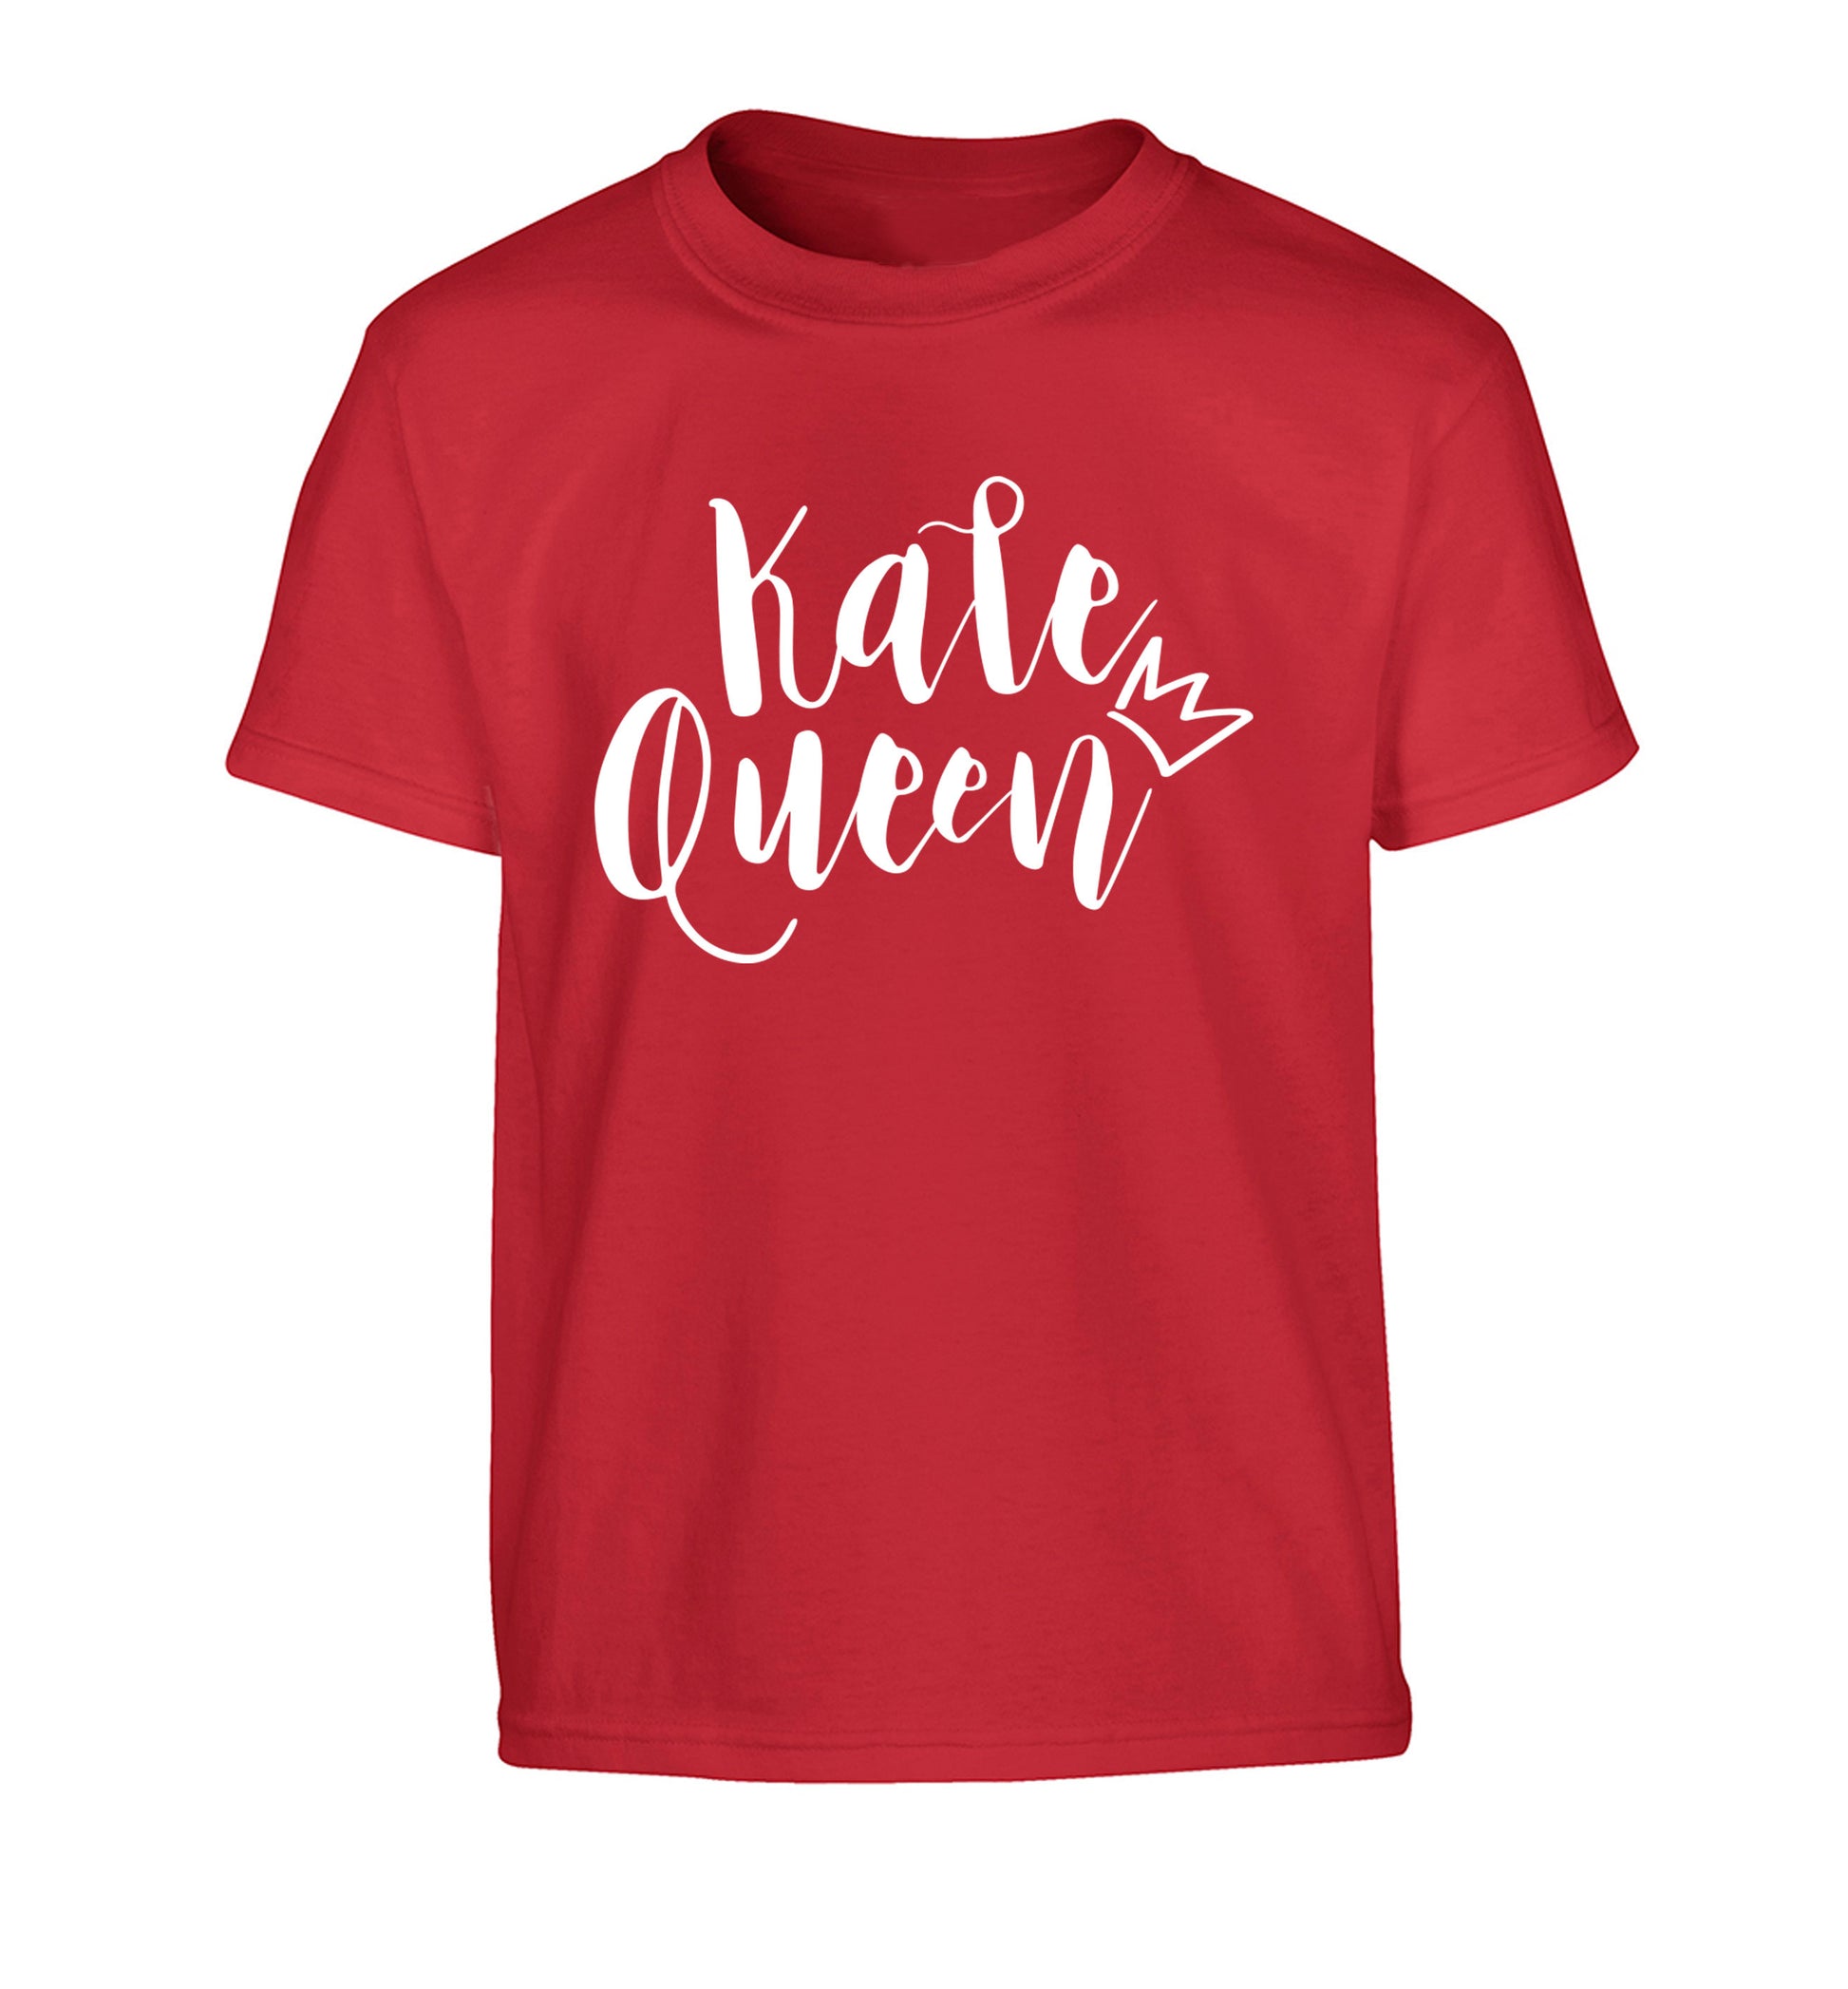 Kale Queen Children's red Tshirt 12-14 Years